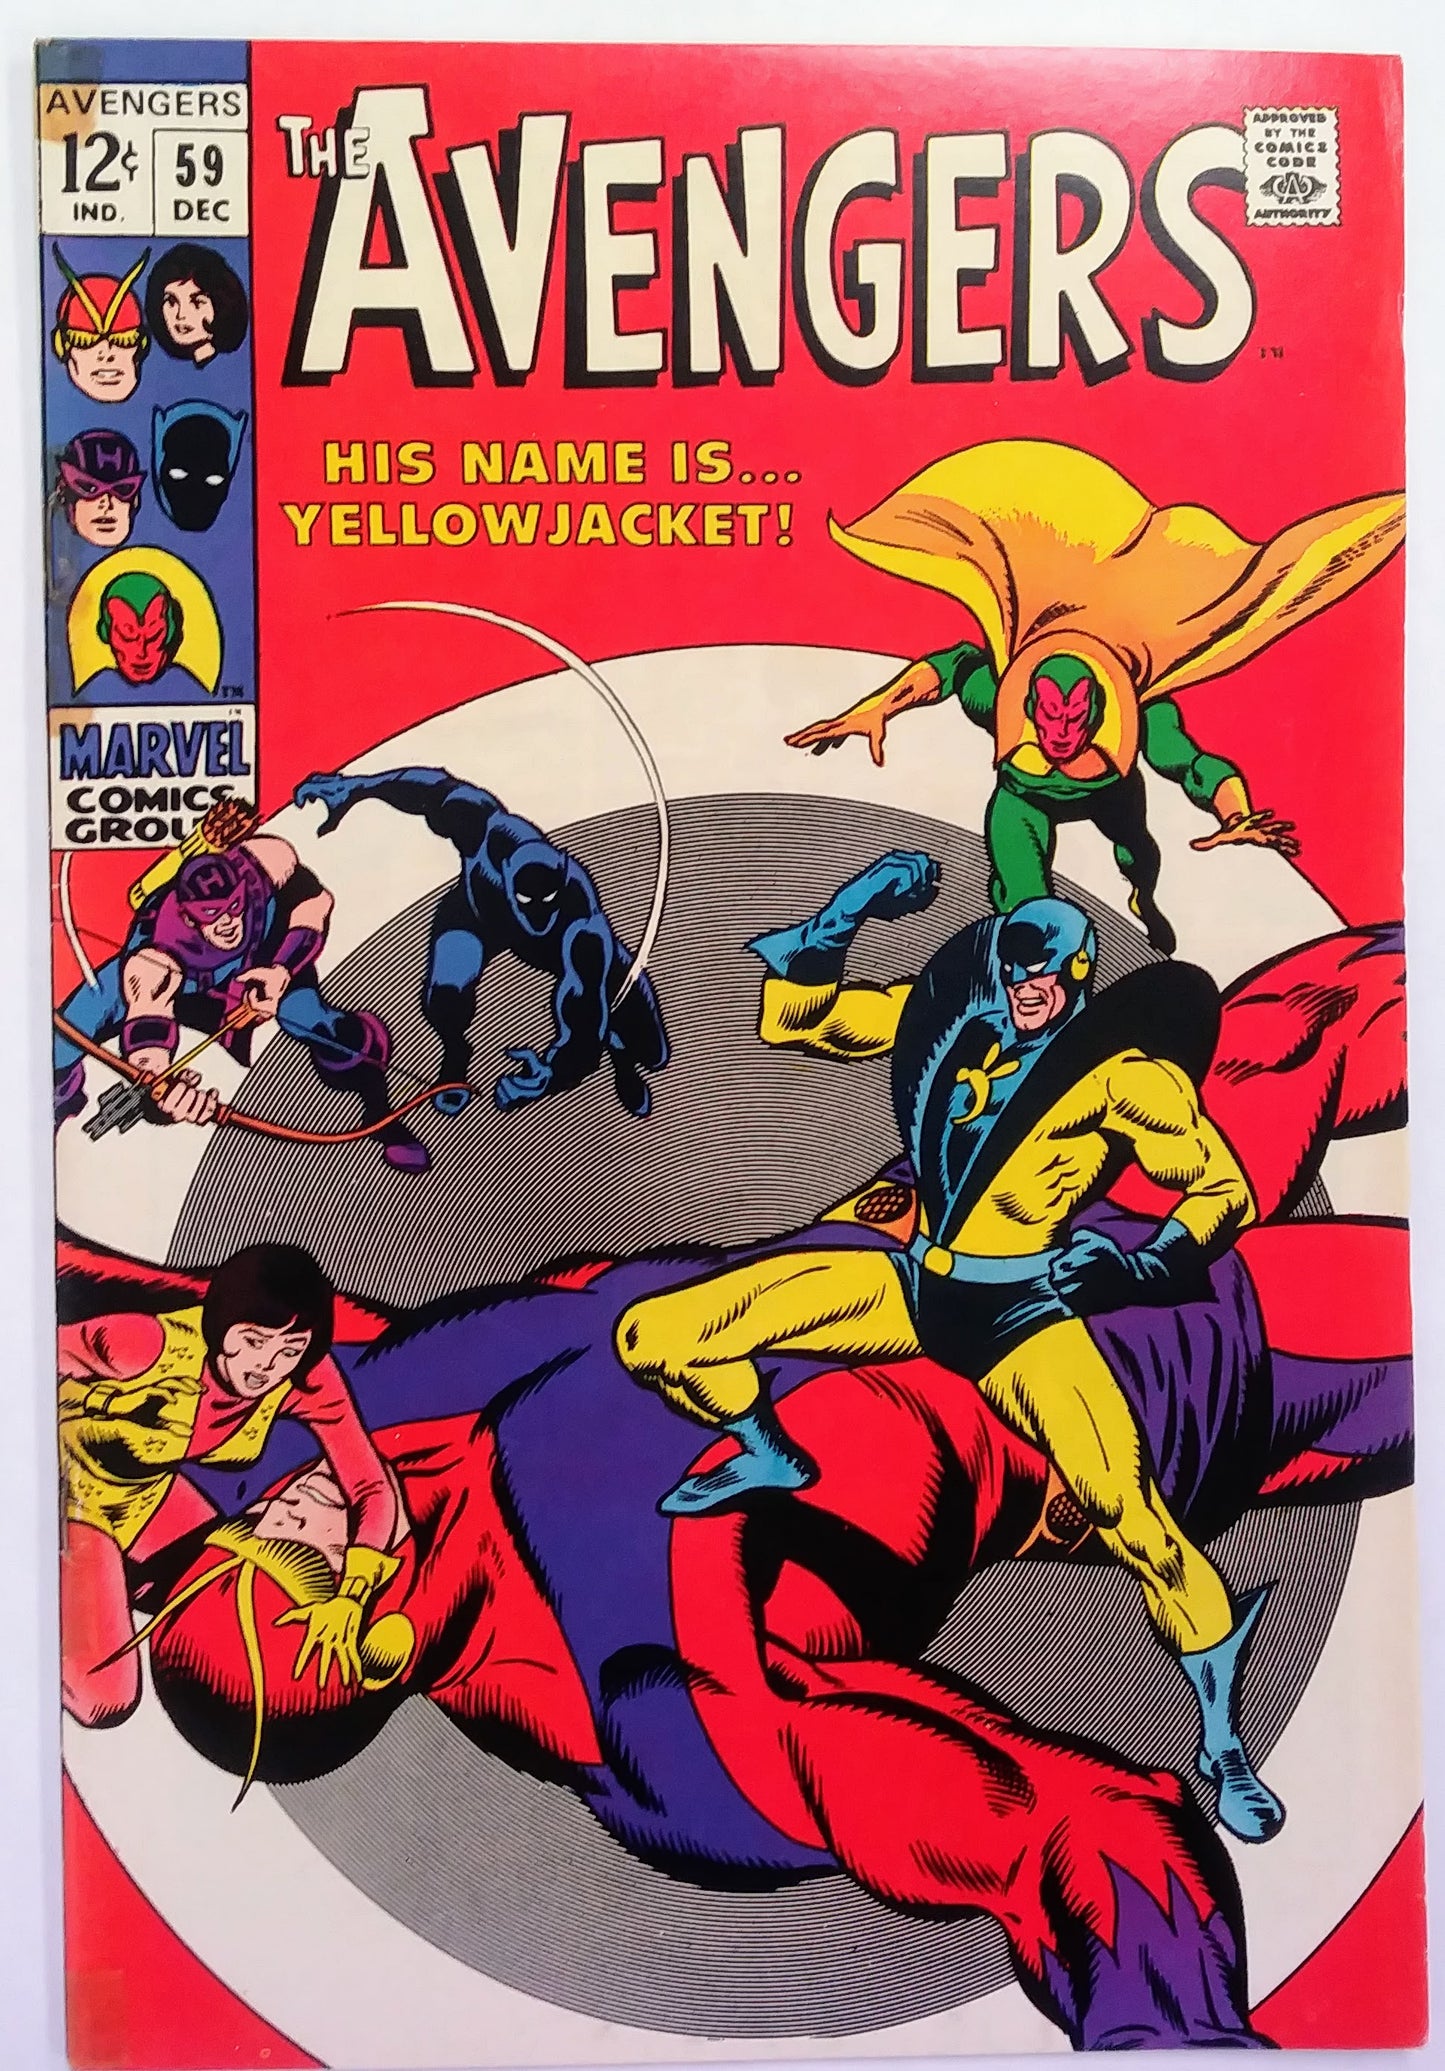 Avengers #059, Marvel Comics (December 1968)